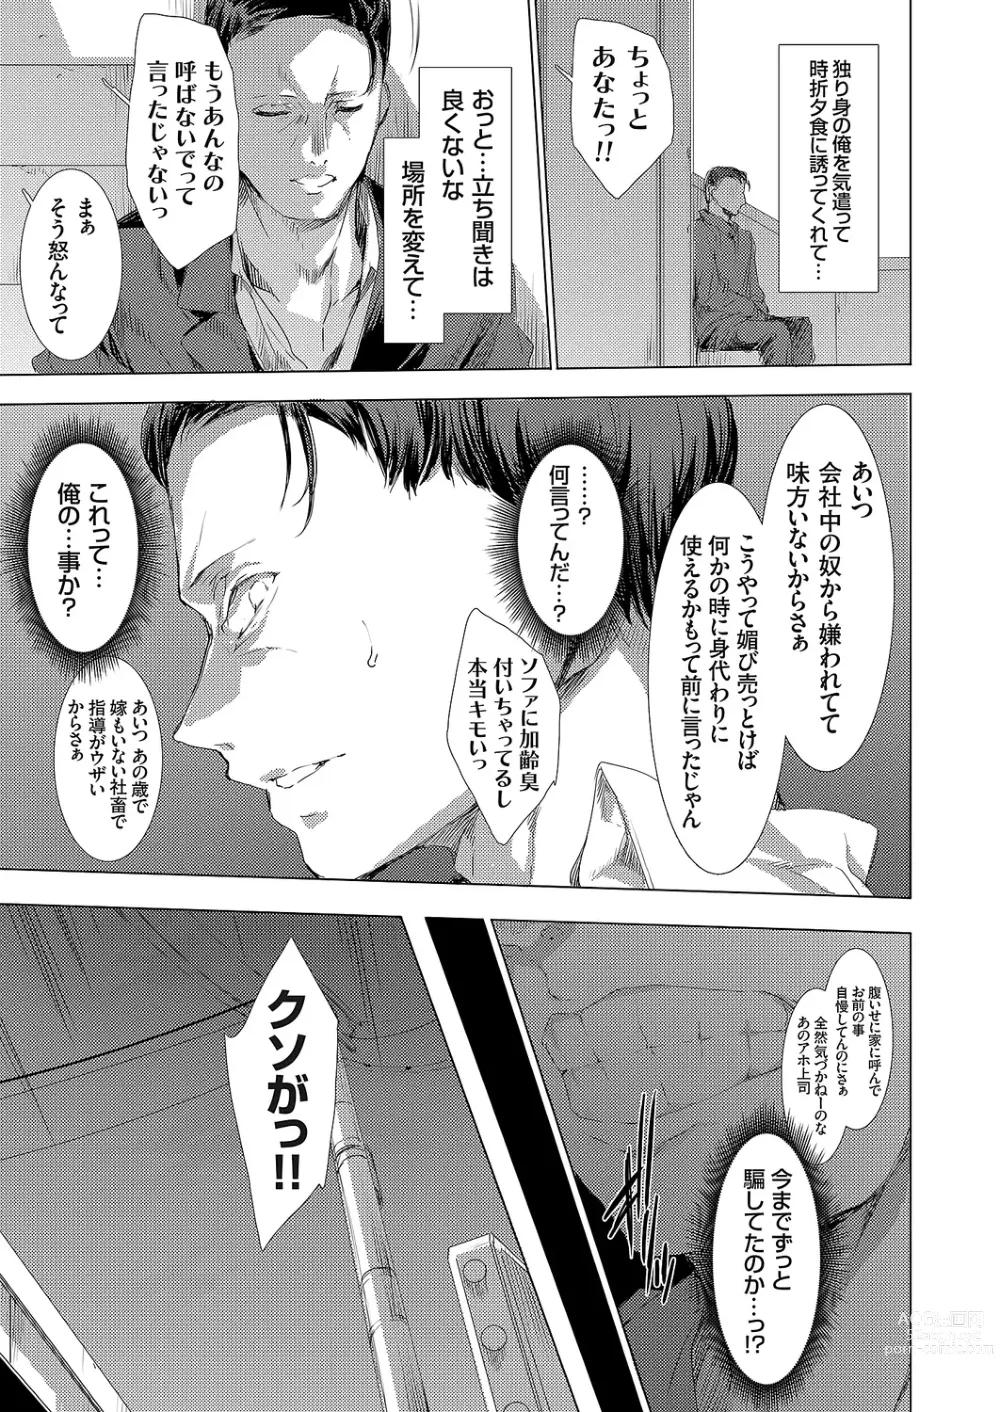 Page 5 of manga Ongyou Kikikaikaidou 01-09